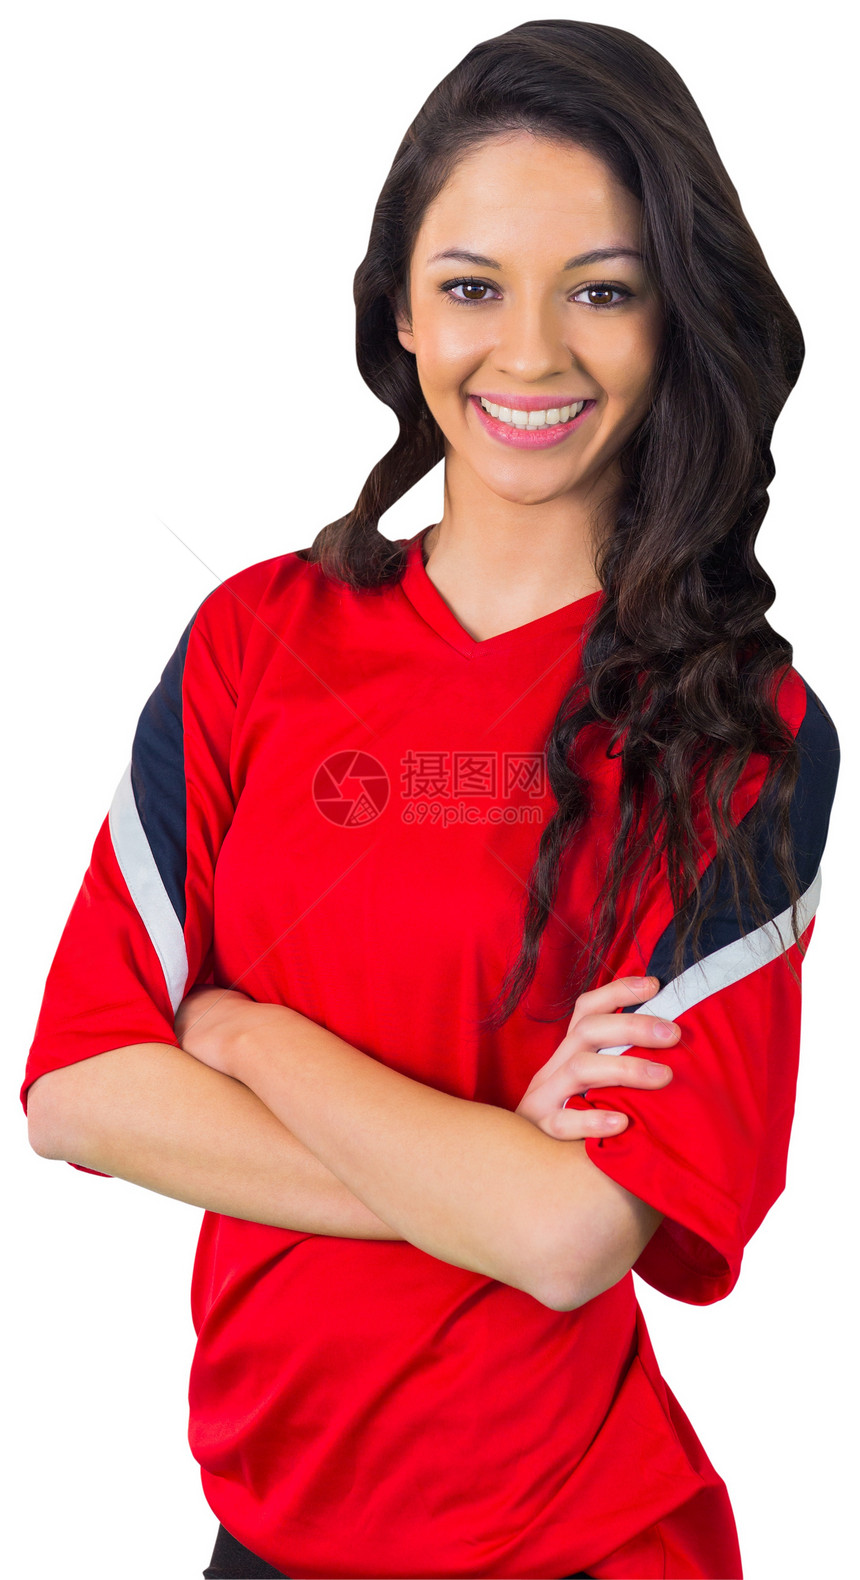 红红色的漂亮足球球迷杯子运动球衣女性快乐活力混血扇子观众支持者图片